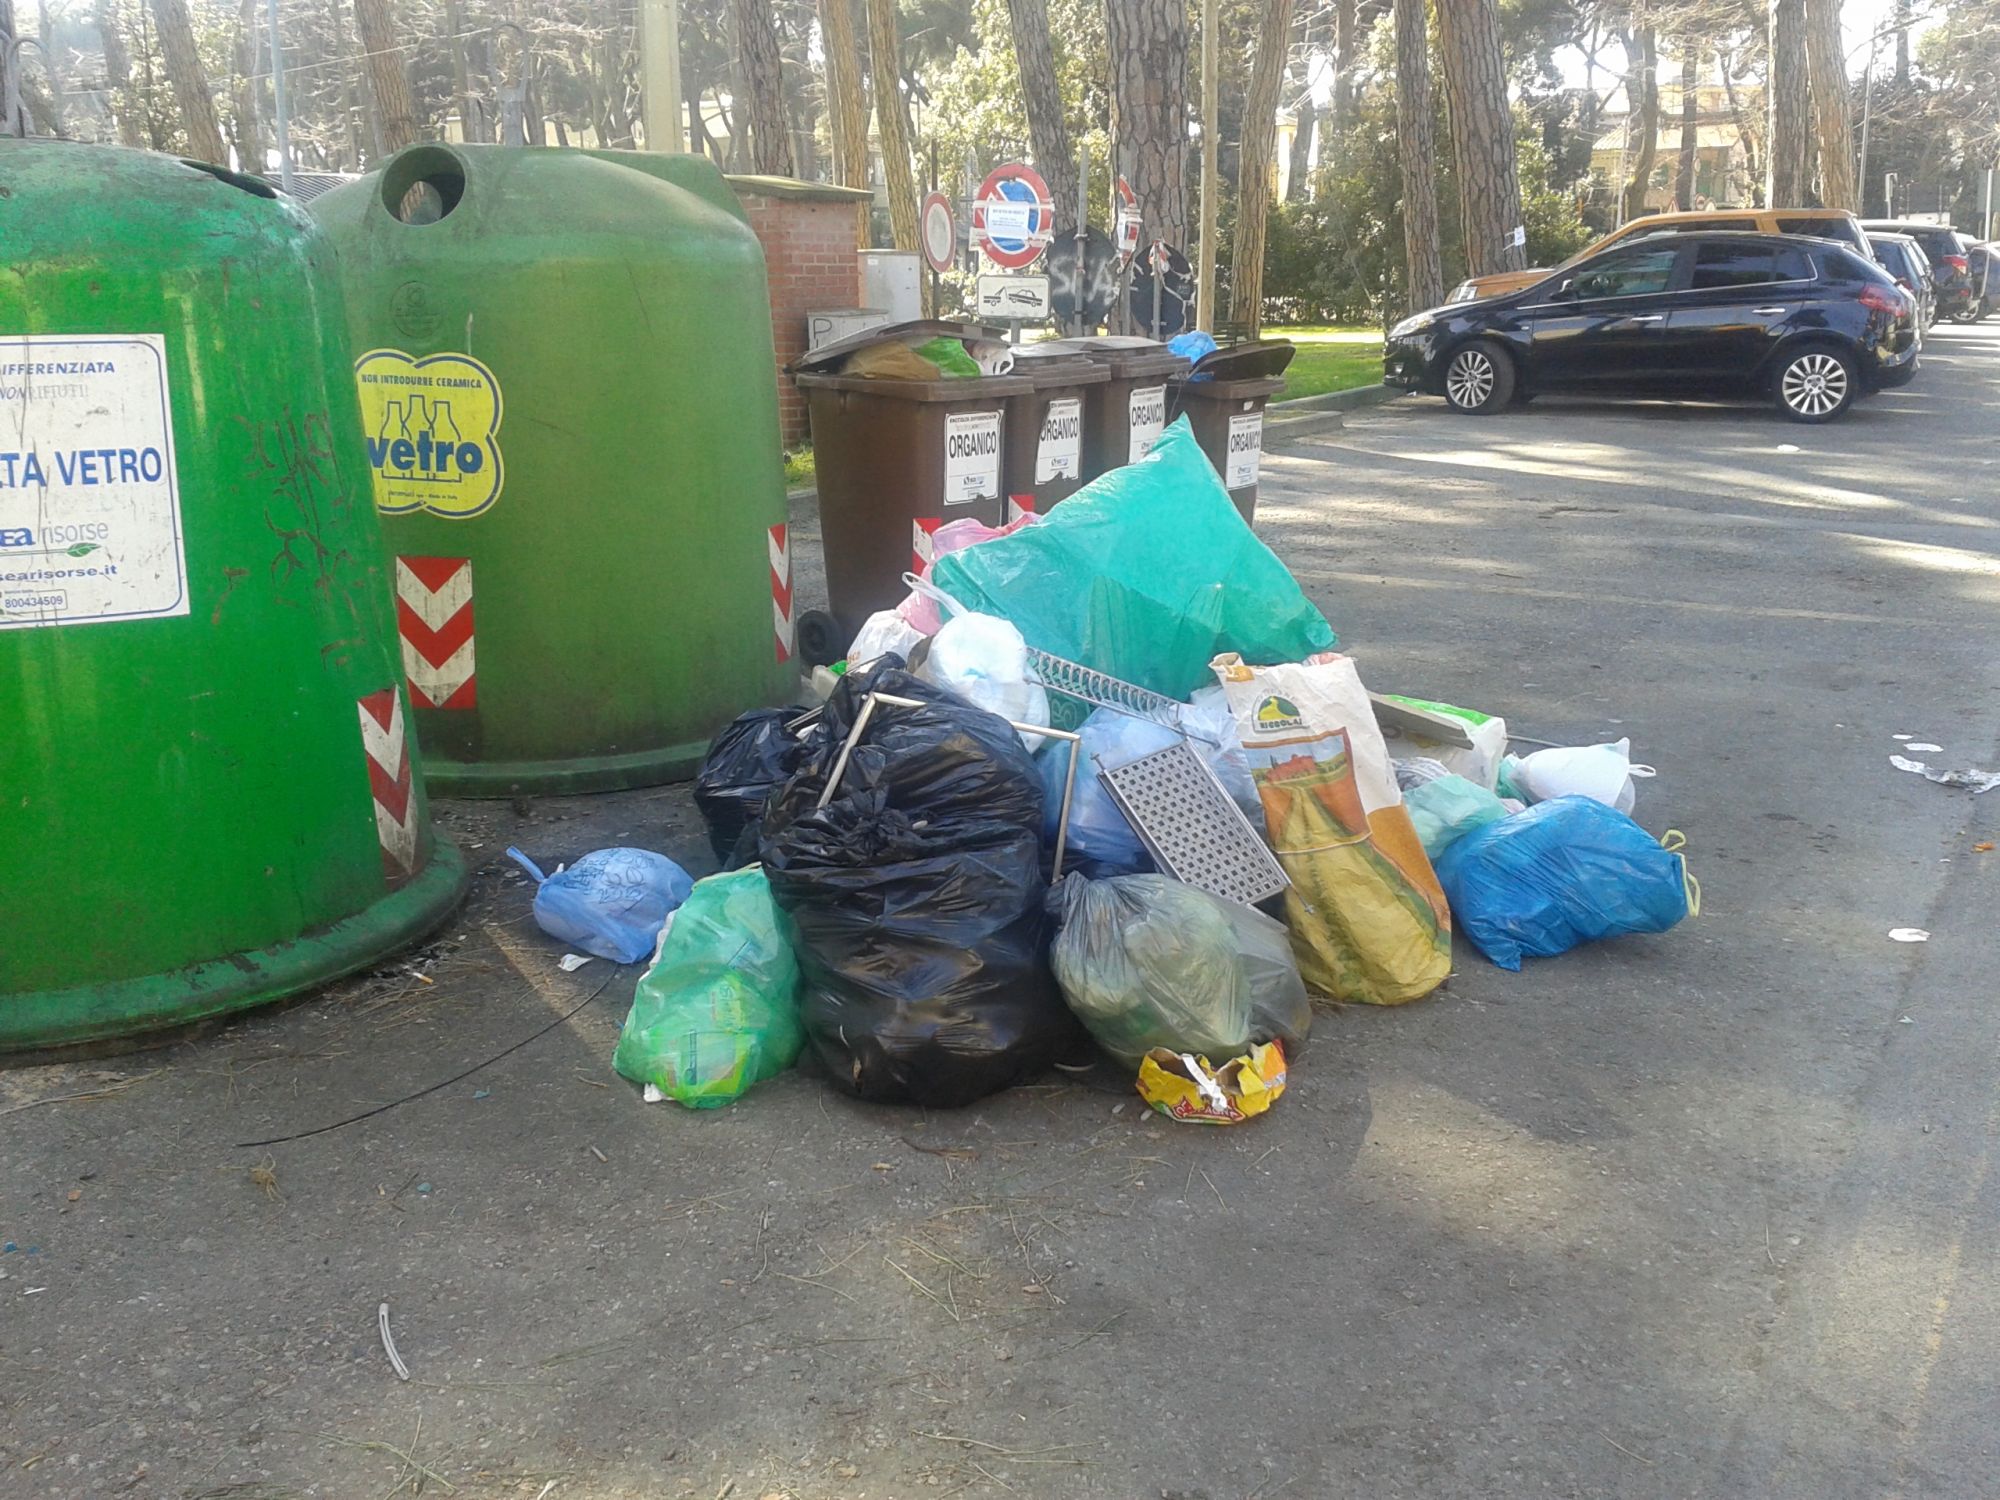 A Viareggio sacchetti di rifiuti abbandonati in mezzo alla strada